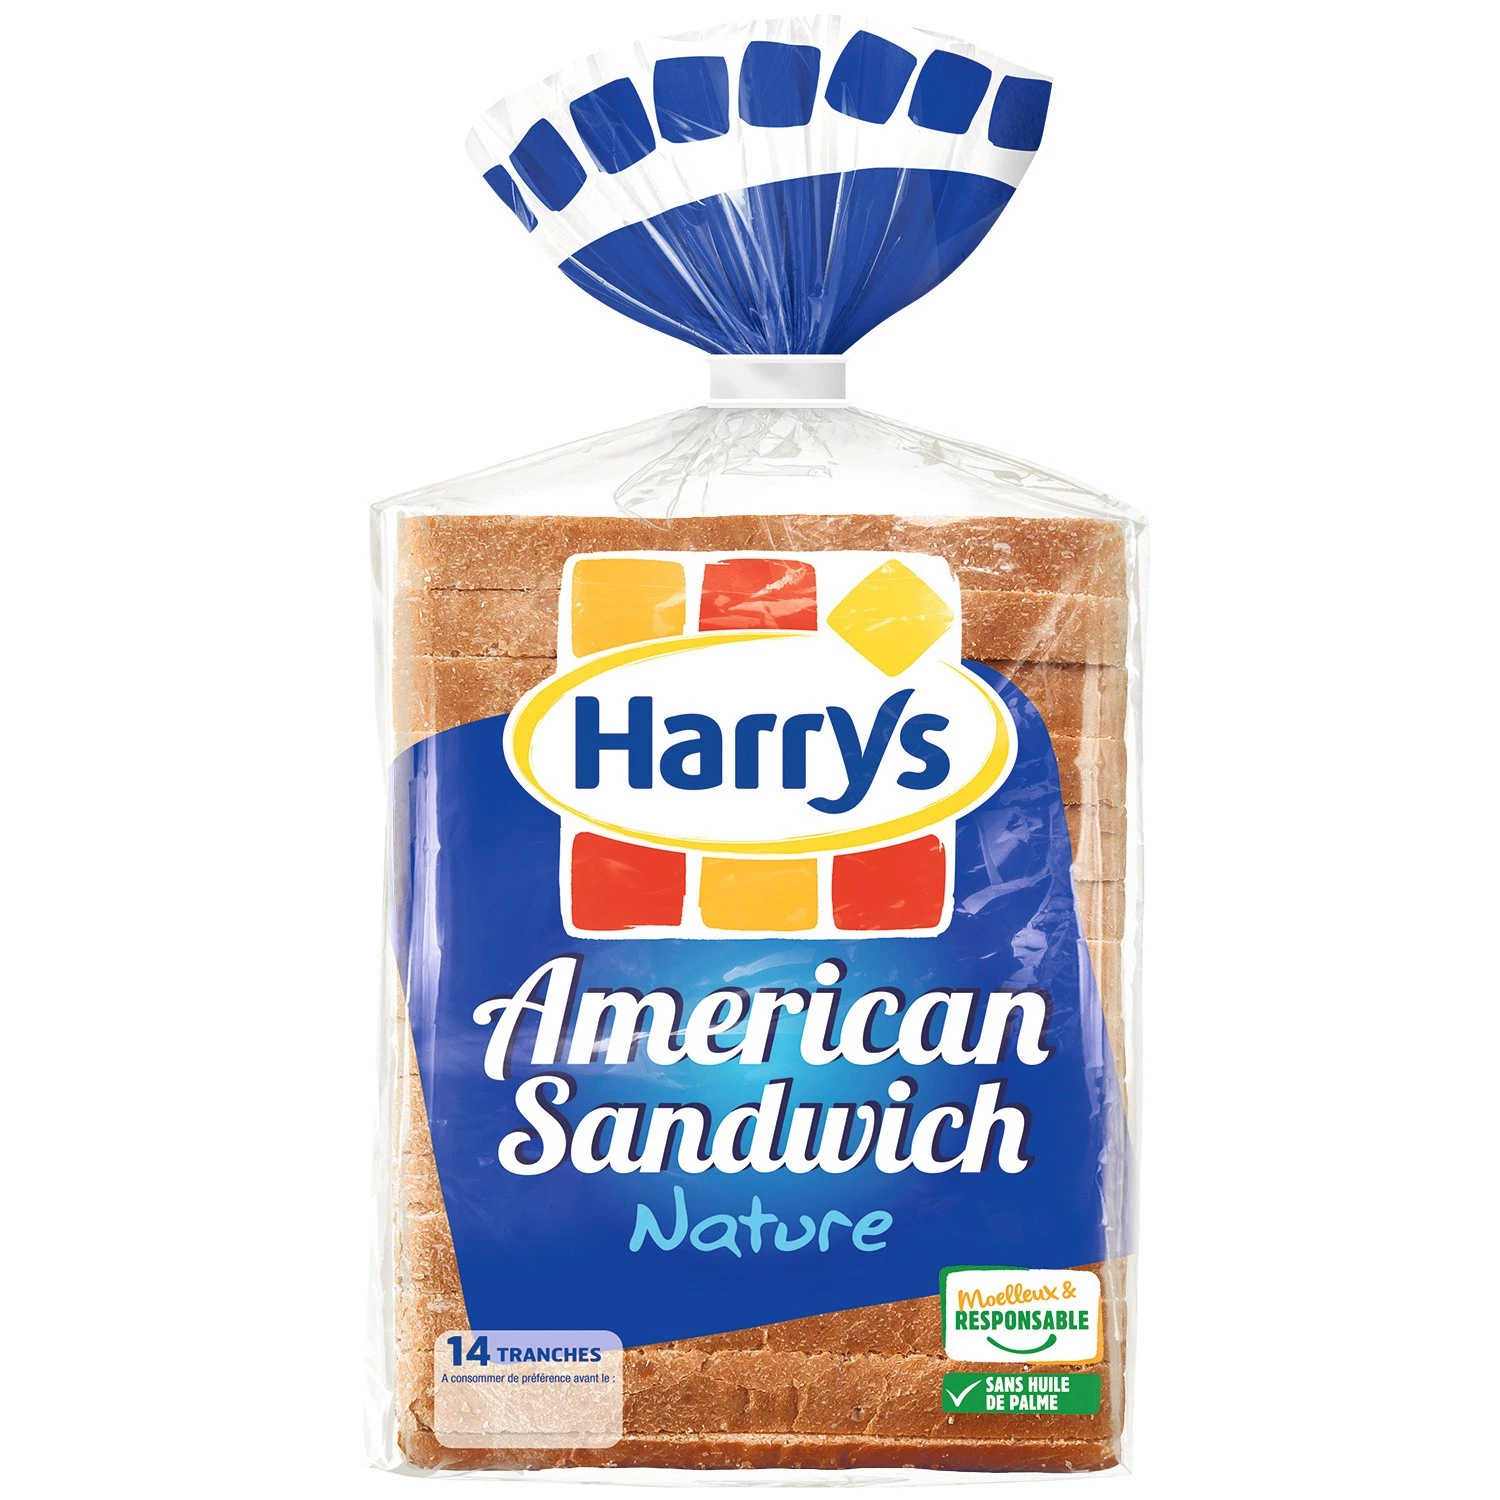 بان دي مي ناتشر ساندويش امريكان x14550 جم - هاريز